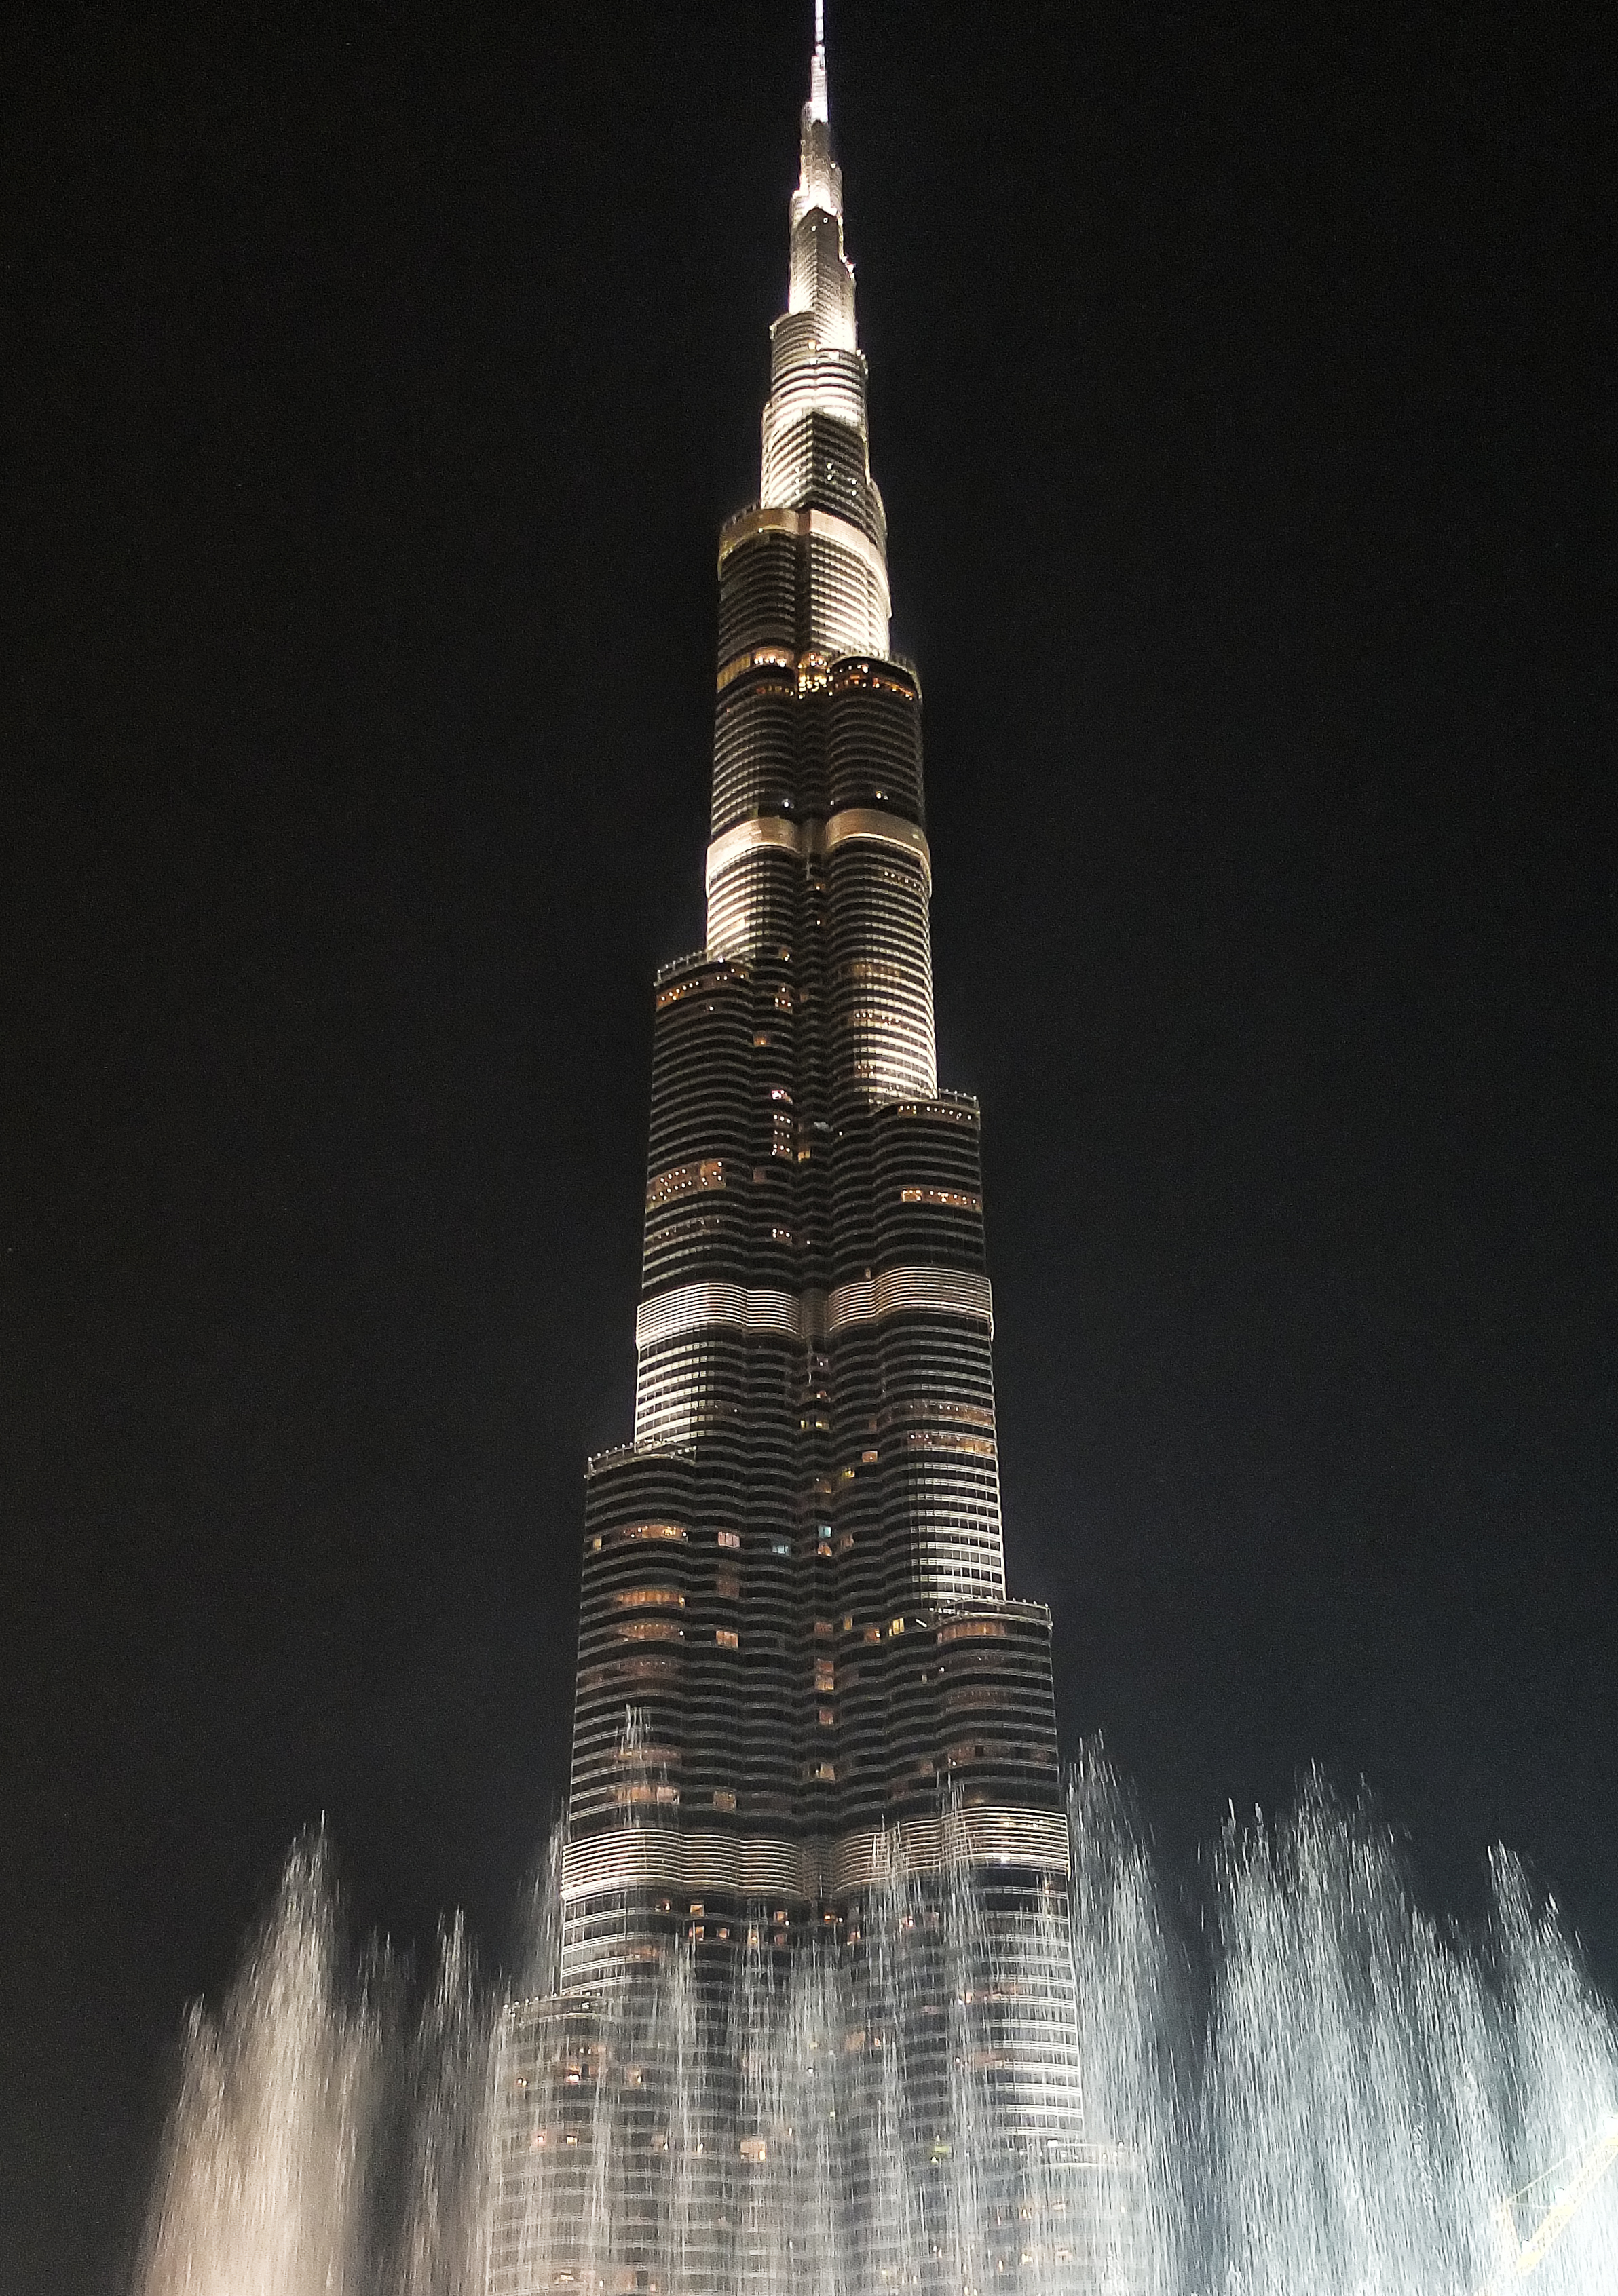 Бурдж халифа цена билета. Башня Бурдж Халифа в Дубае. Бурдж Халифа 2011. Бурдж-Халифа (828 м). Дубай, ОАЭ. Достопримечательности Дубая Бурдж Халифа.